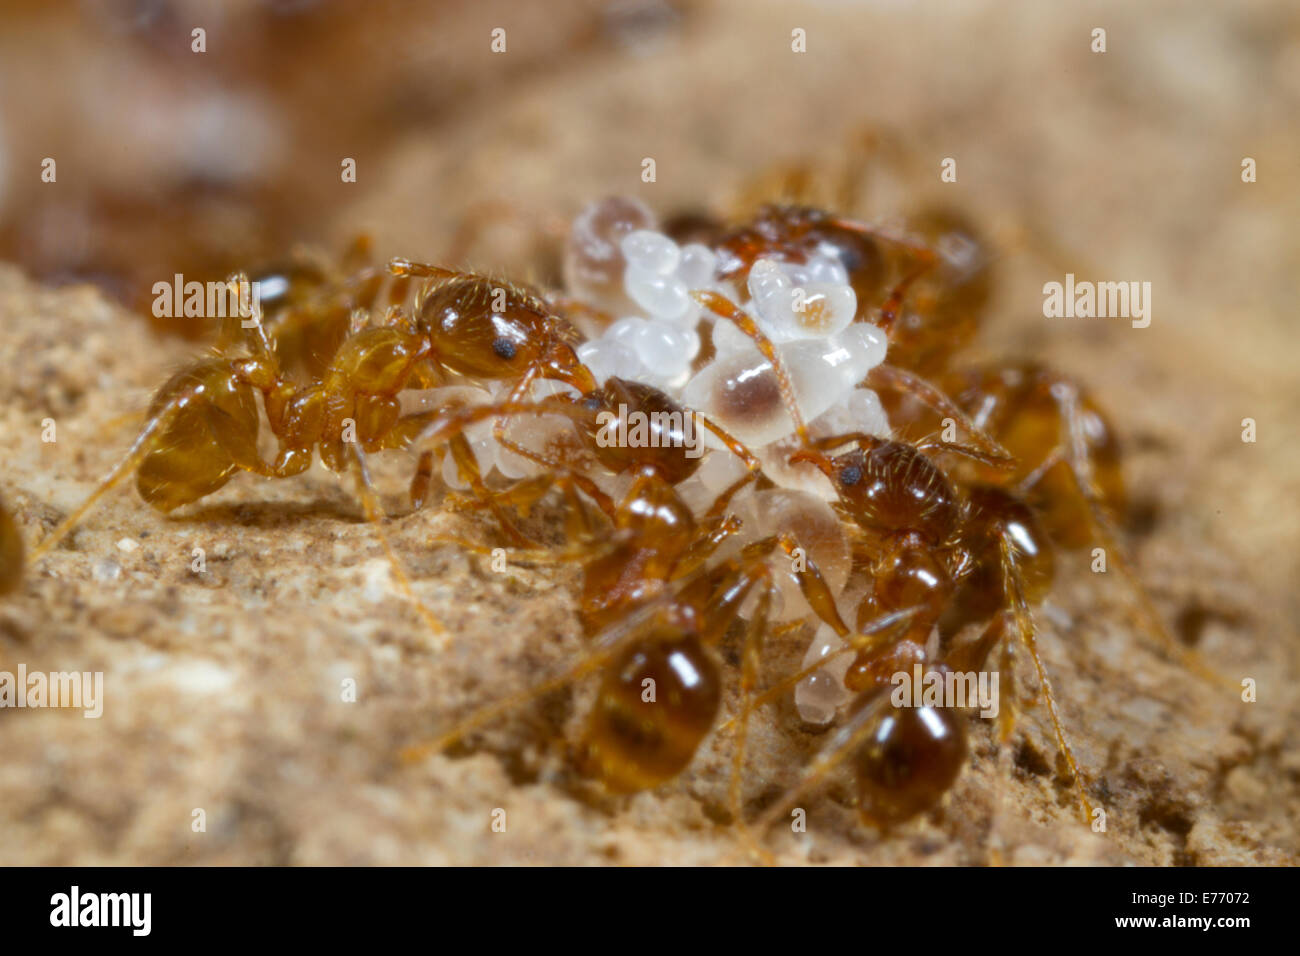 Mittelmeer dimorphen Ameise (Pheidole Pallidula) Arbeitnehmer tendenziell Larven und Eiern im Nest. Ile St. Martin, Aude, Frankreich. Stockfoto